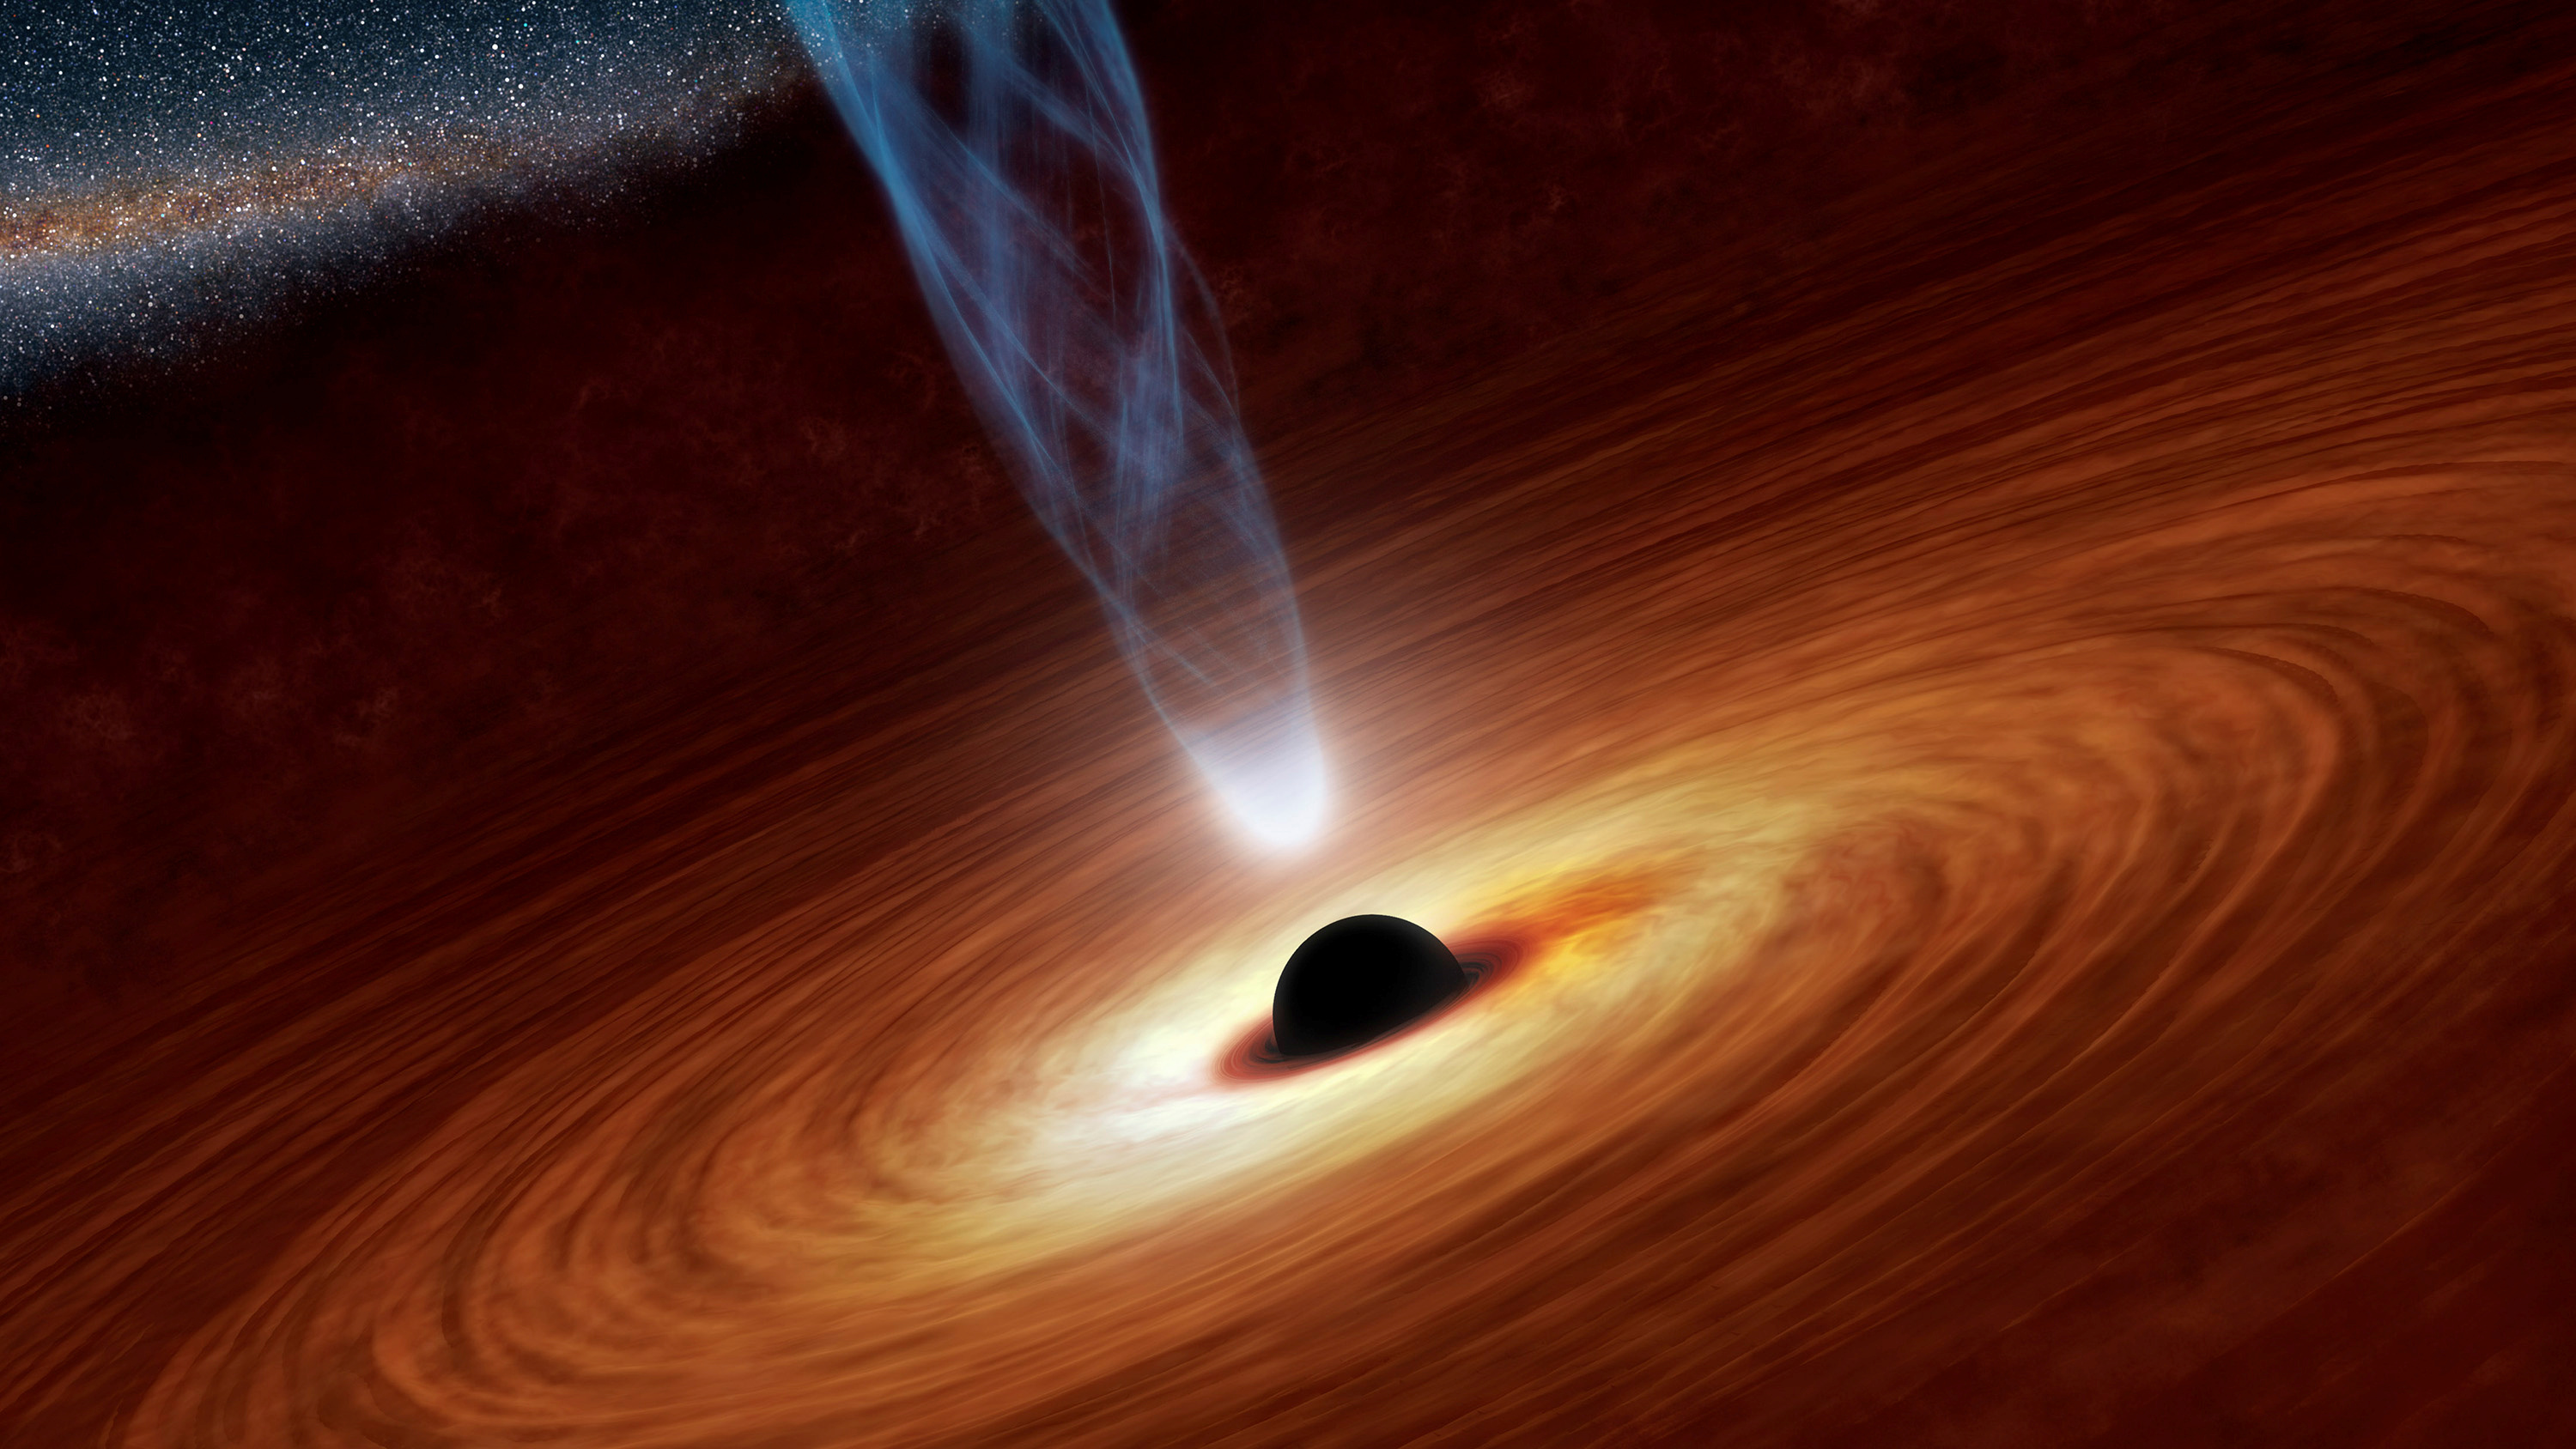 Por qué el comportamiento nunca visto de un agujero negro despertó la curiosidad científica